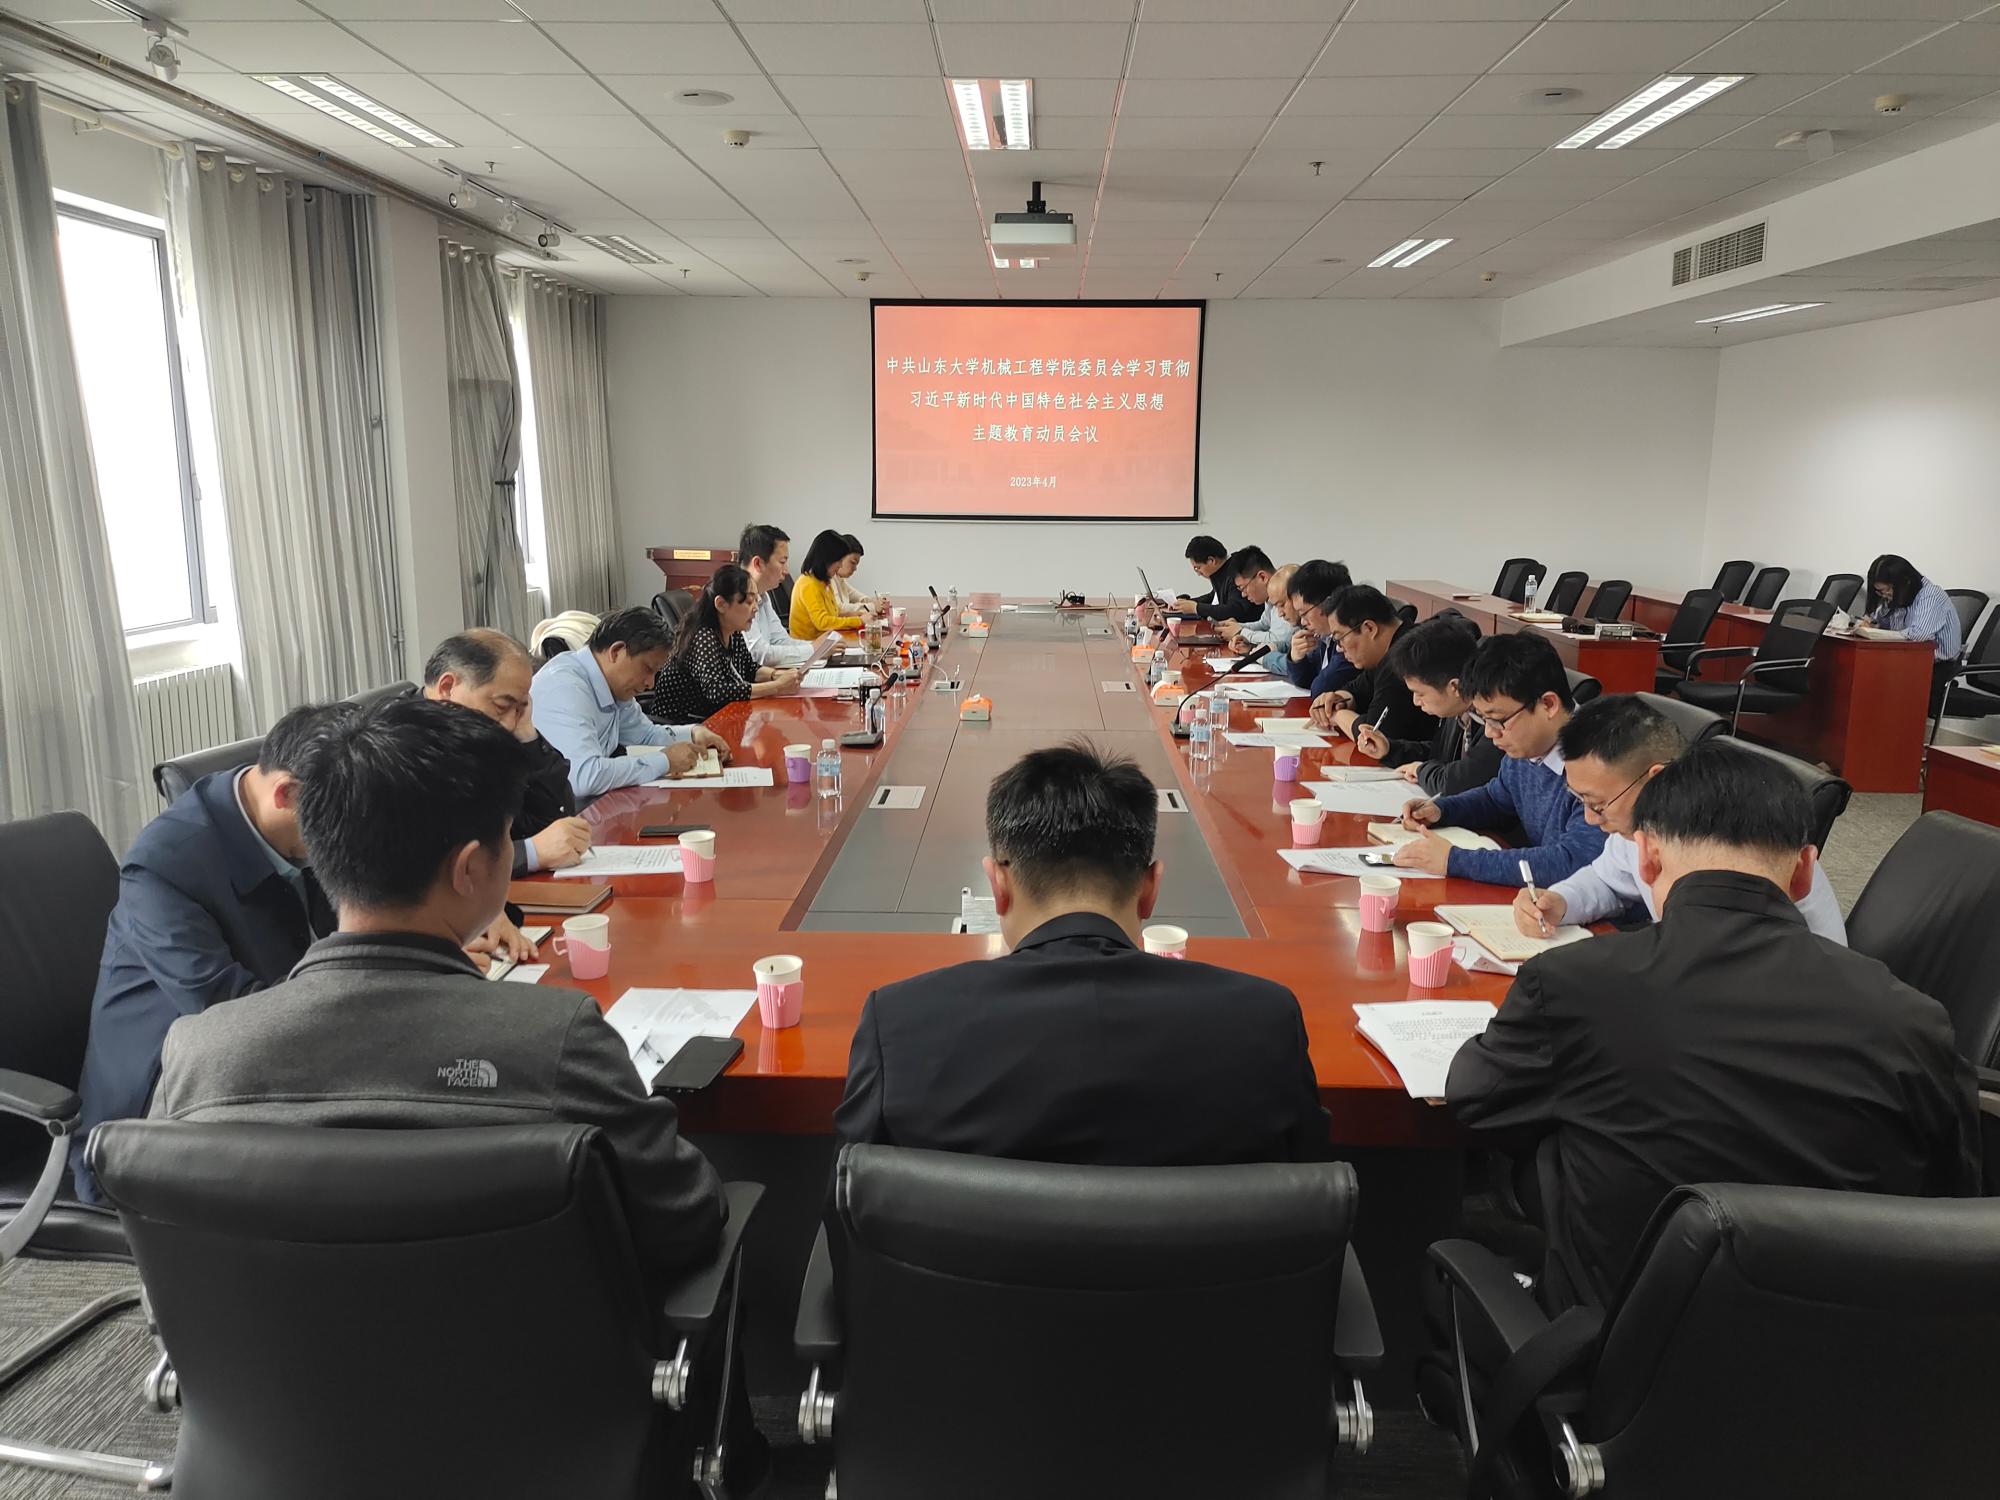 机械工程学院召开学习贯彻习近平新时代中国特色社会主义思想主题教育动员会议